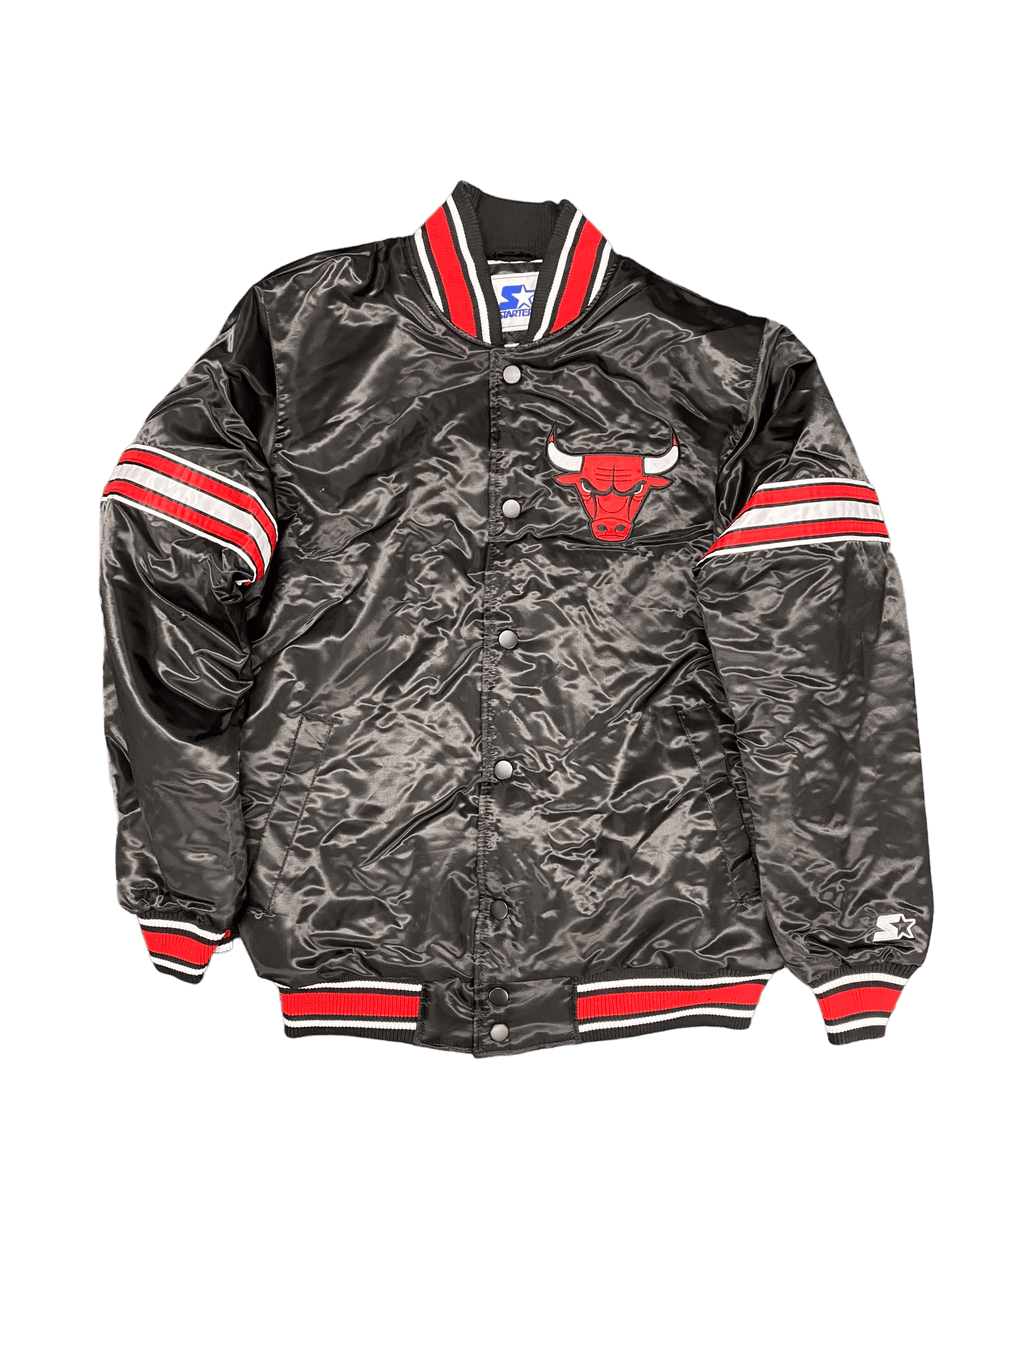 Starter Men's Chicago Bulls NBA Varsity Satin Red Jacket Red / S